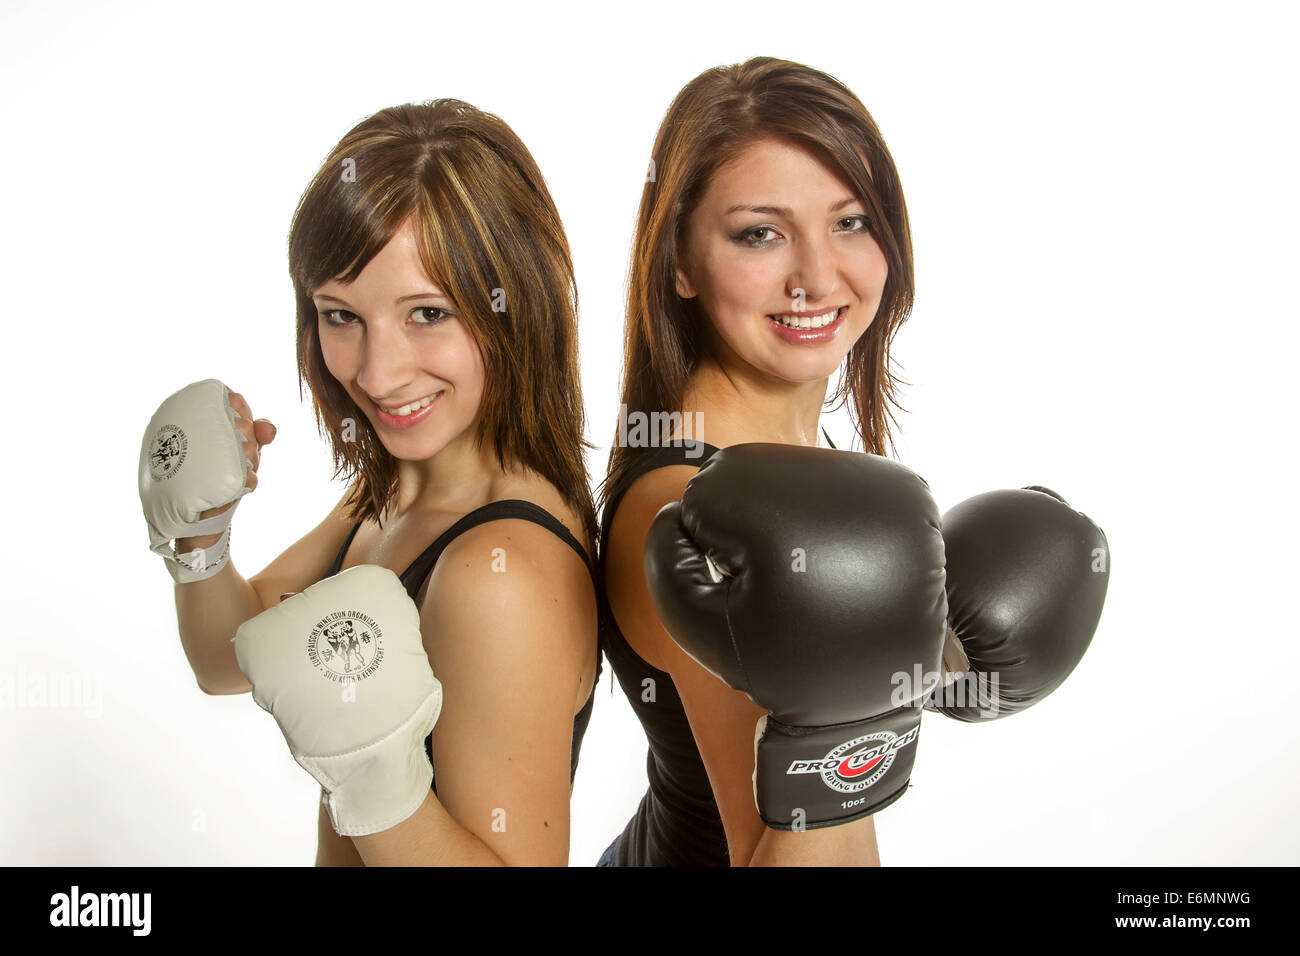 Zwei junge Frauen in Sportbekleidung, eine Wing Chun Handschuhen, die anderen tragen Boxhandschuhe Stockfoto